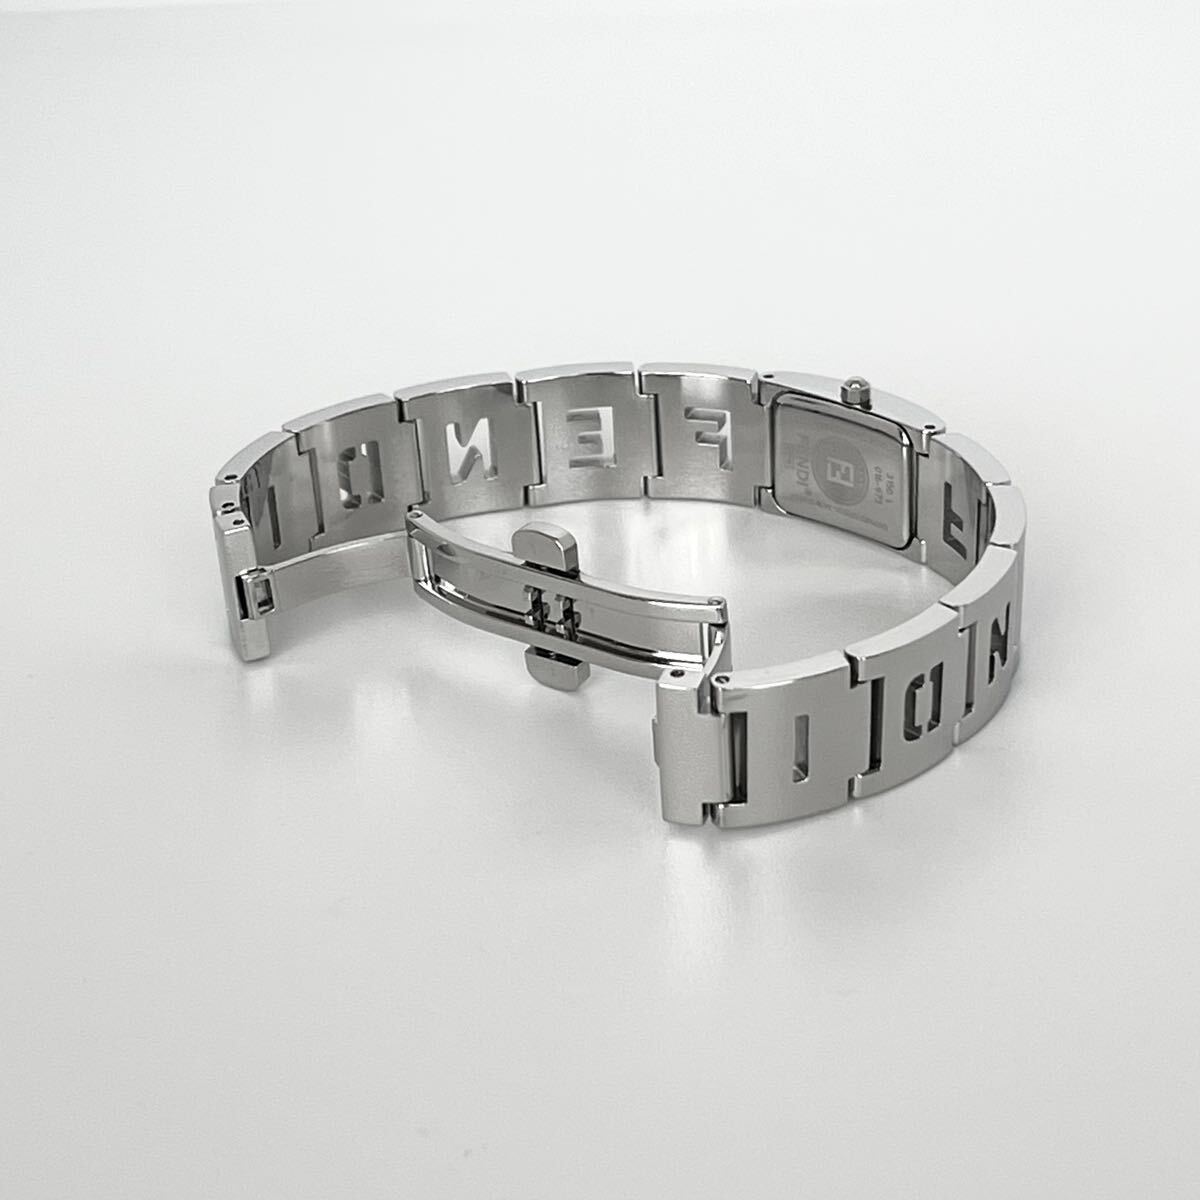 [ работа ] отполирован Fendi FENDI 3150L женские наручные часы прекрасный товар батарейка новый товар черный циферблат s1586